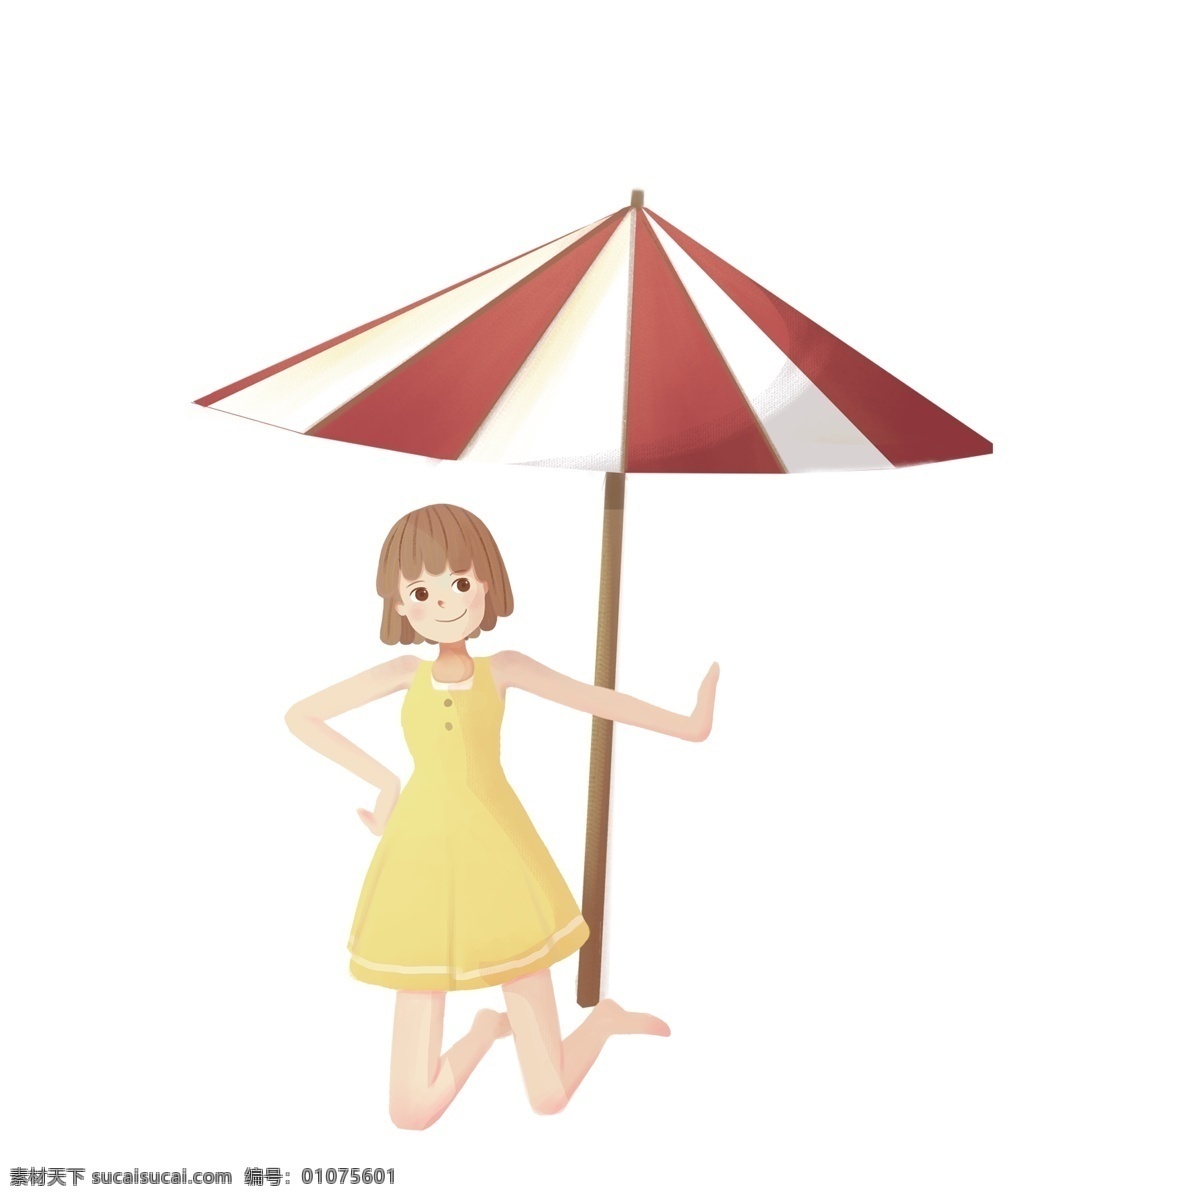 伞 下 女孩 免 扣 图 伞下的女孩免 漂亮 短发 可爱的女孩 穿着黄裙子 跪着的女孩 免扣图